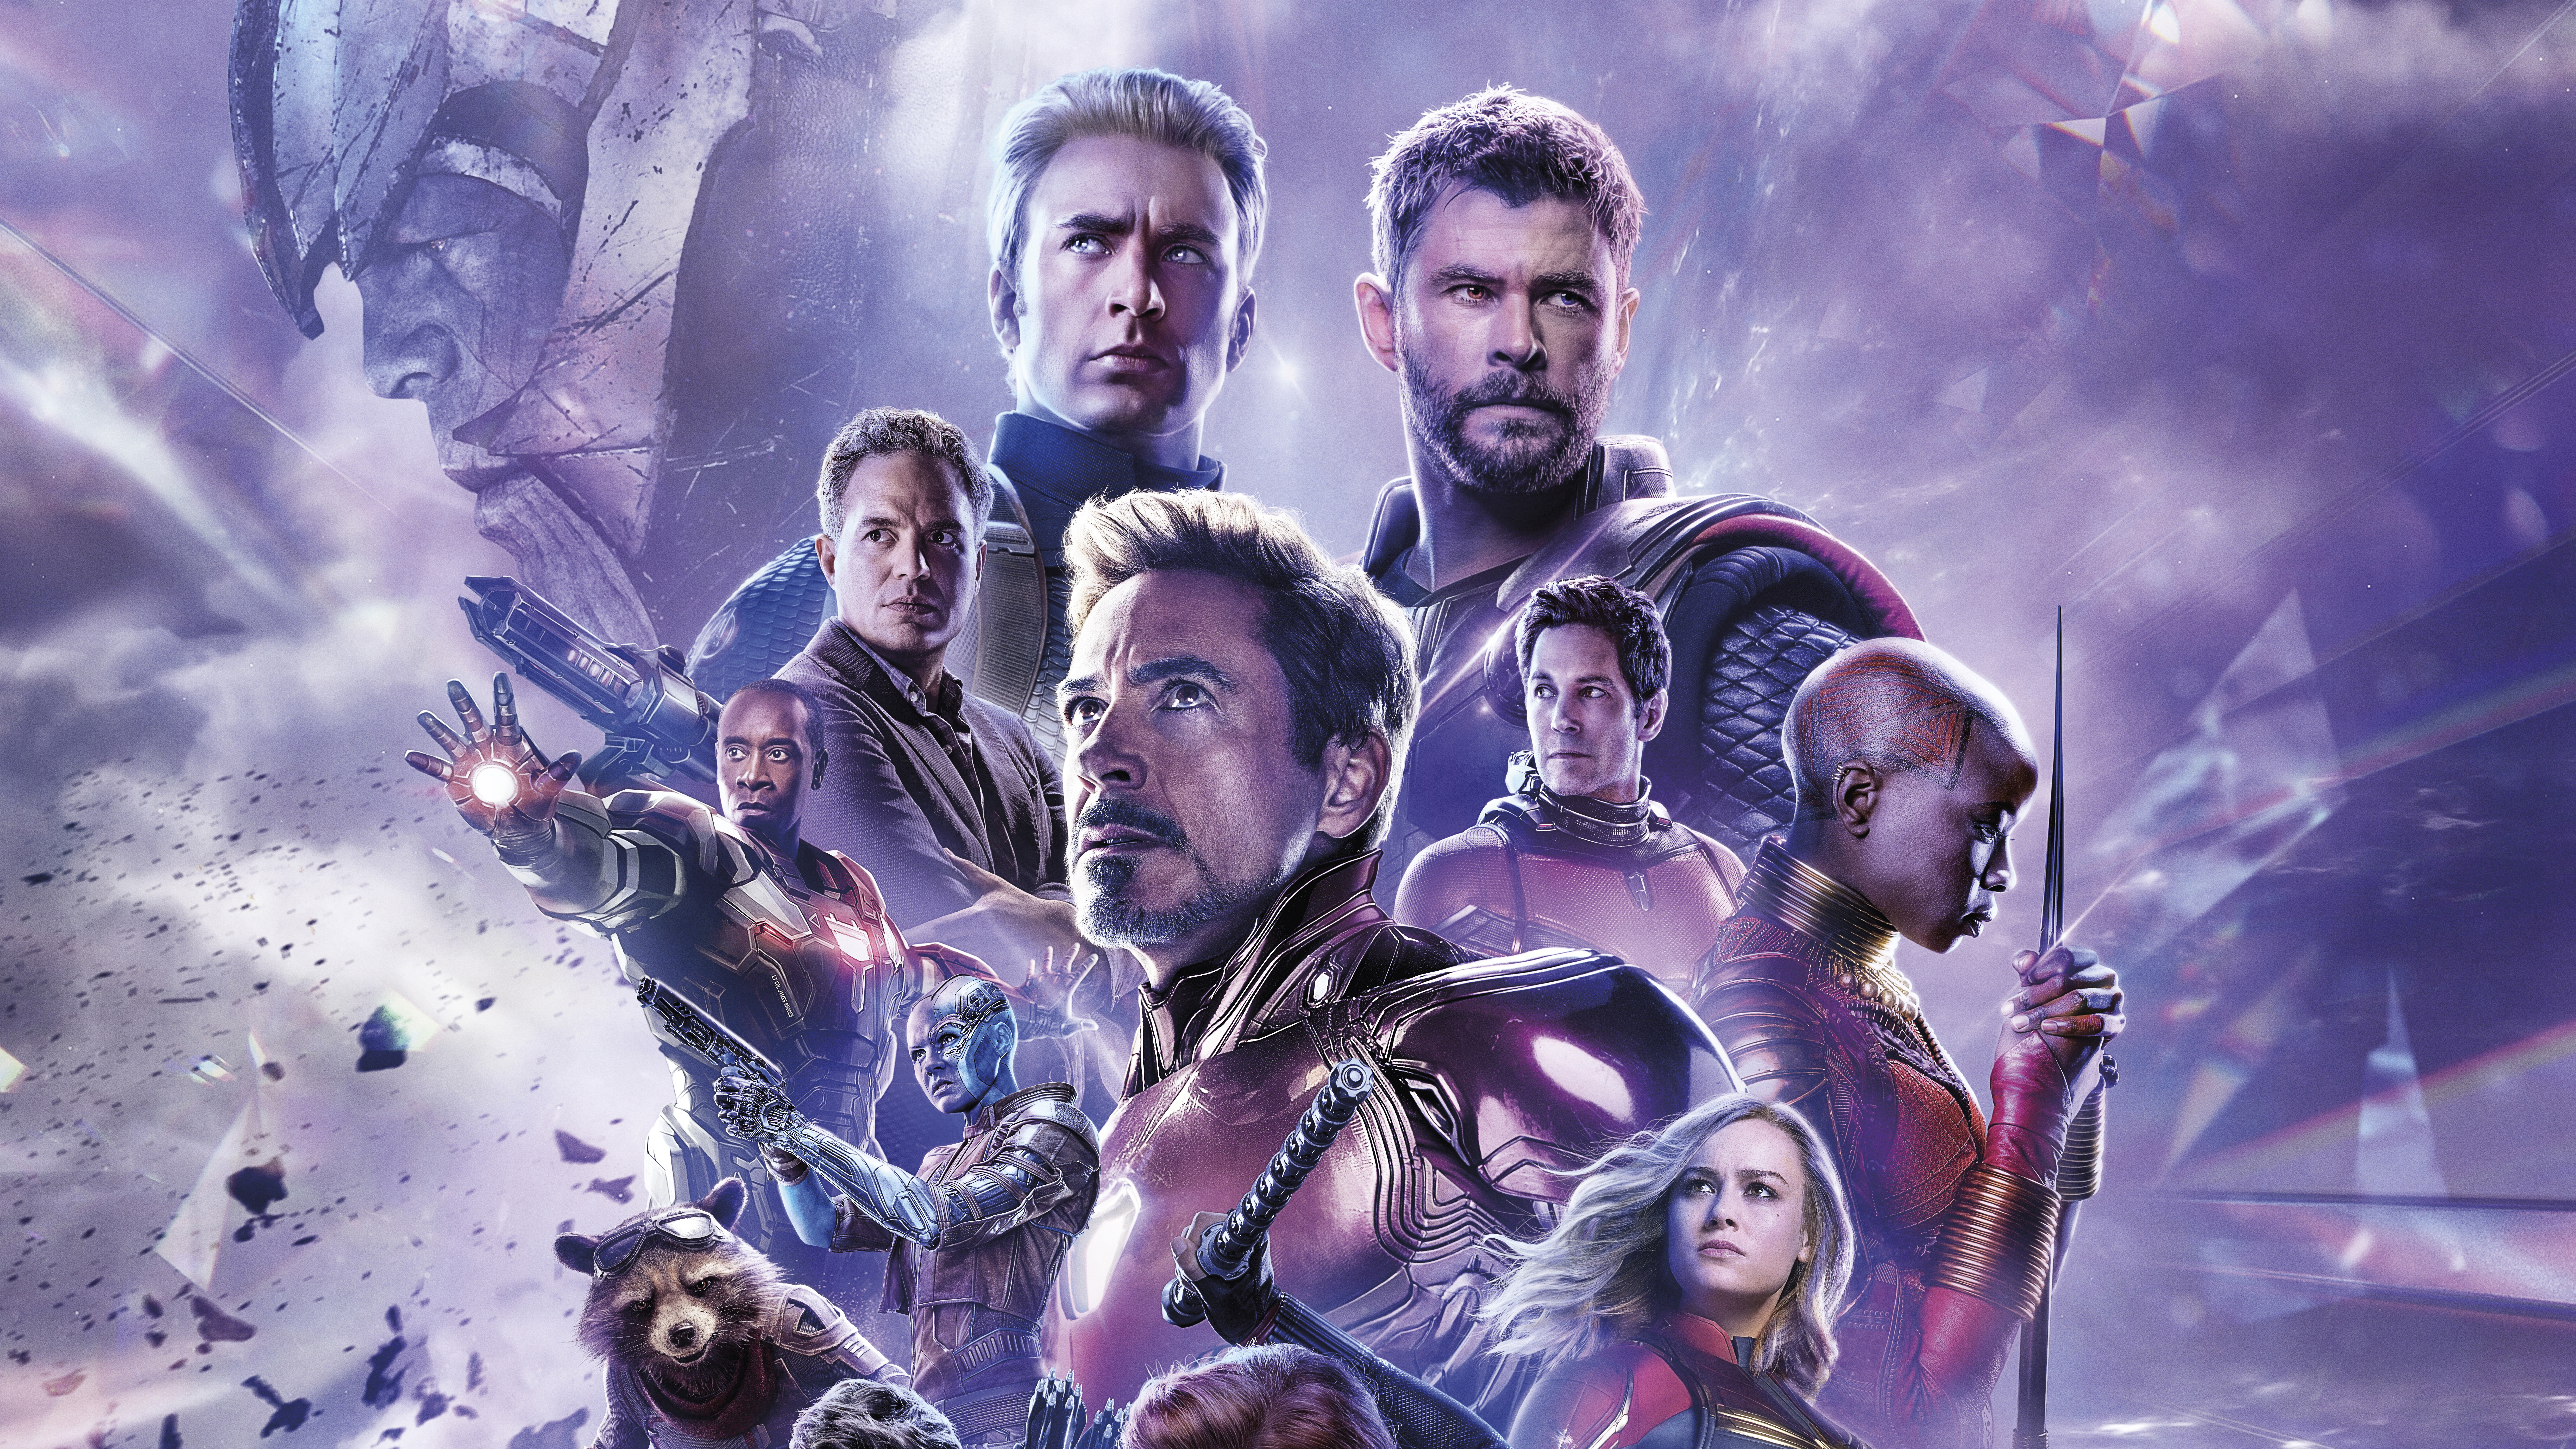 Qasoskorlar 4 o zbek tilida. Мстители: финал Avengers: Endgame. Мстители 4 финал. Постер "Мстители. Финал 2019".